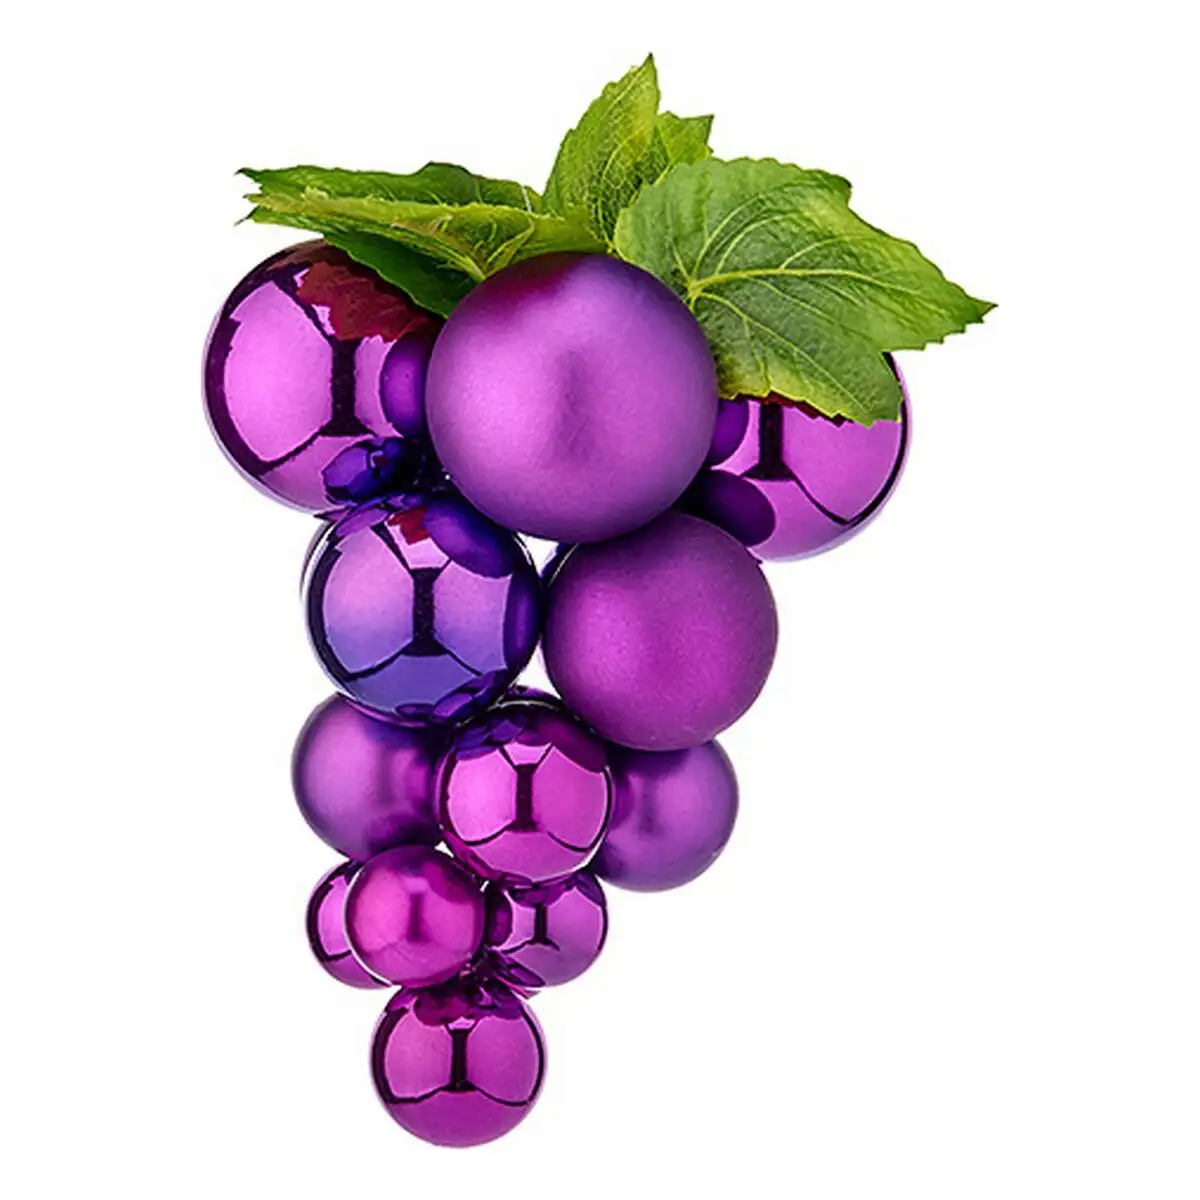 Boules de noel grand raisins violet plastique_2663. Bienvenue chez DIAYTAR SENEGAL - Où Chaque Produit a son Âme. Découvrez notre gamme et choisissez des articles qui résonnent avec votre personnalité et vos valeurs.